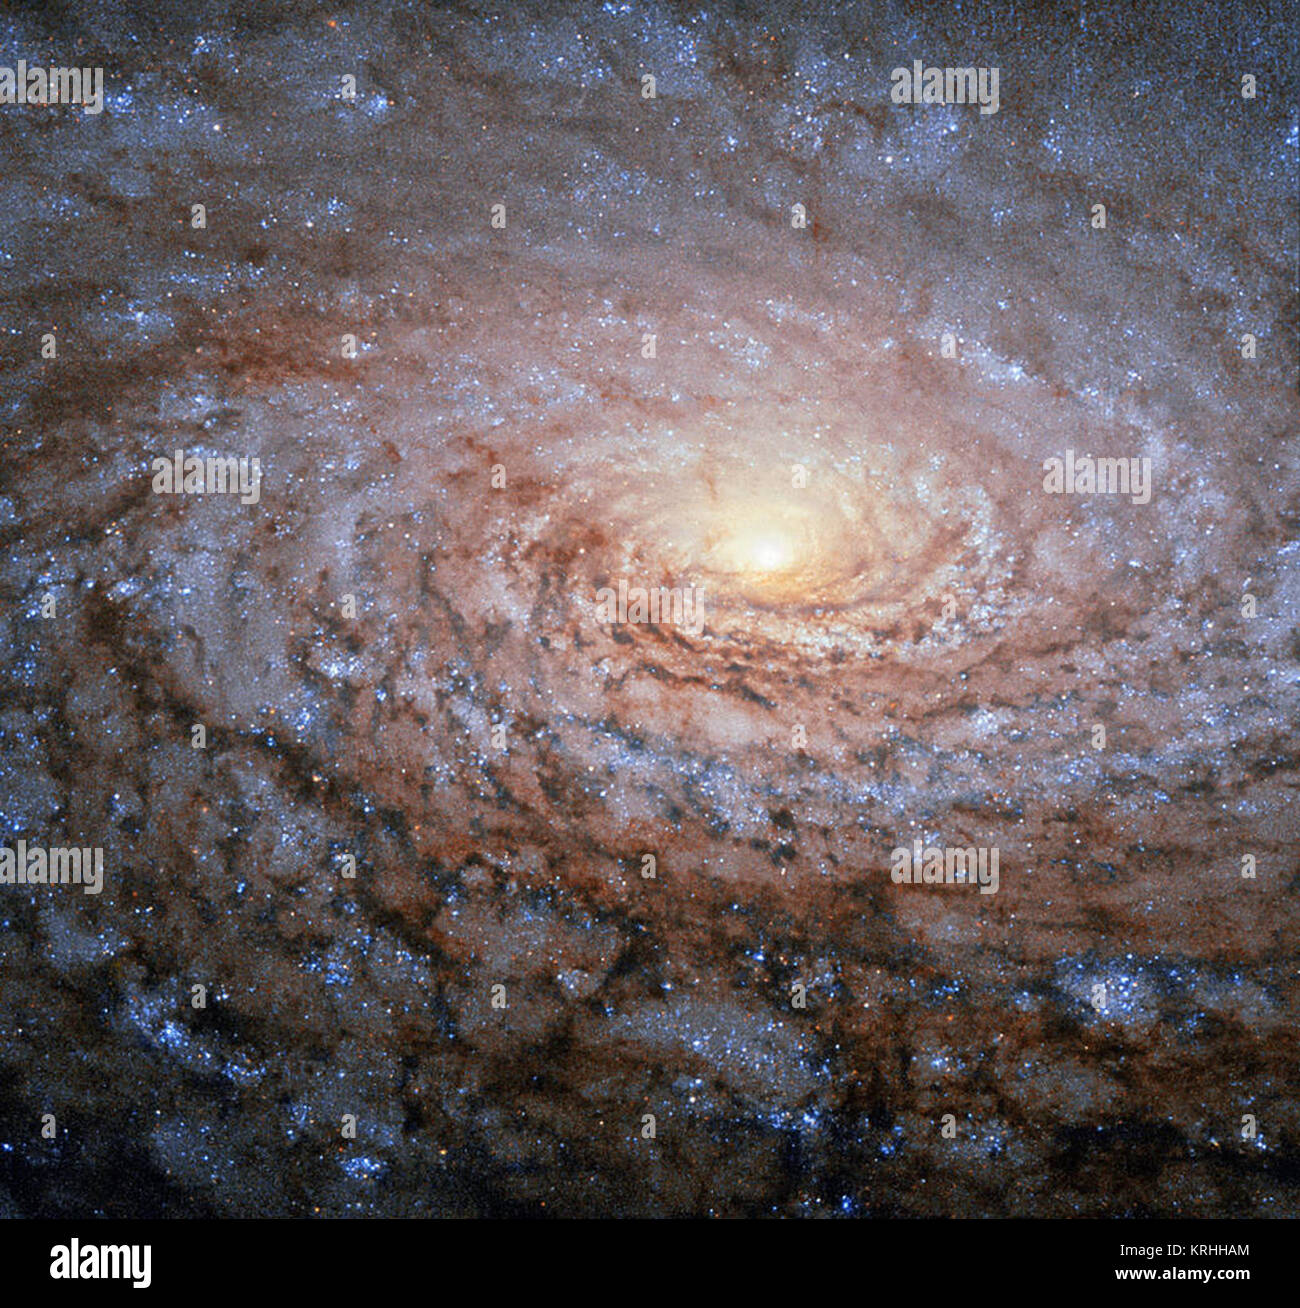 L'arrangement des bras spiraux de la galaxie Messier 63, qu'on voit ici dans une nouvelle image de la NASA/ESA Hubble Space Telescope, rappeler le motif au centre d'un tournesol. Si l'alias de cet objet cosmique - le tournesol - Galaxy n'est pas un hasard. Découvert par Pierre Mechain en 1779, la galaxie plus tard a fait que le 63e entrée en compagnons de l'astronome français Charles Messier's célèbre catalogue, publié en 1781. Les deux astronomes ont repéré la lueur de la galaxie du tournesol dans la petite constellation du nord, canes Venatici (les chiens de chasse). Nous savons maintenant cette galaxie est d'environ 27 millions de li Banque D'Images